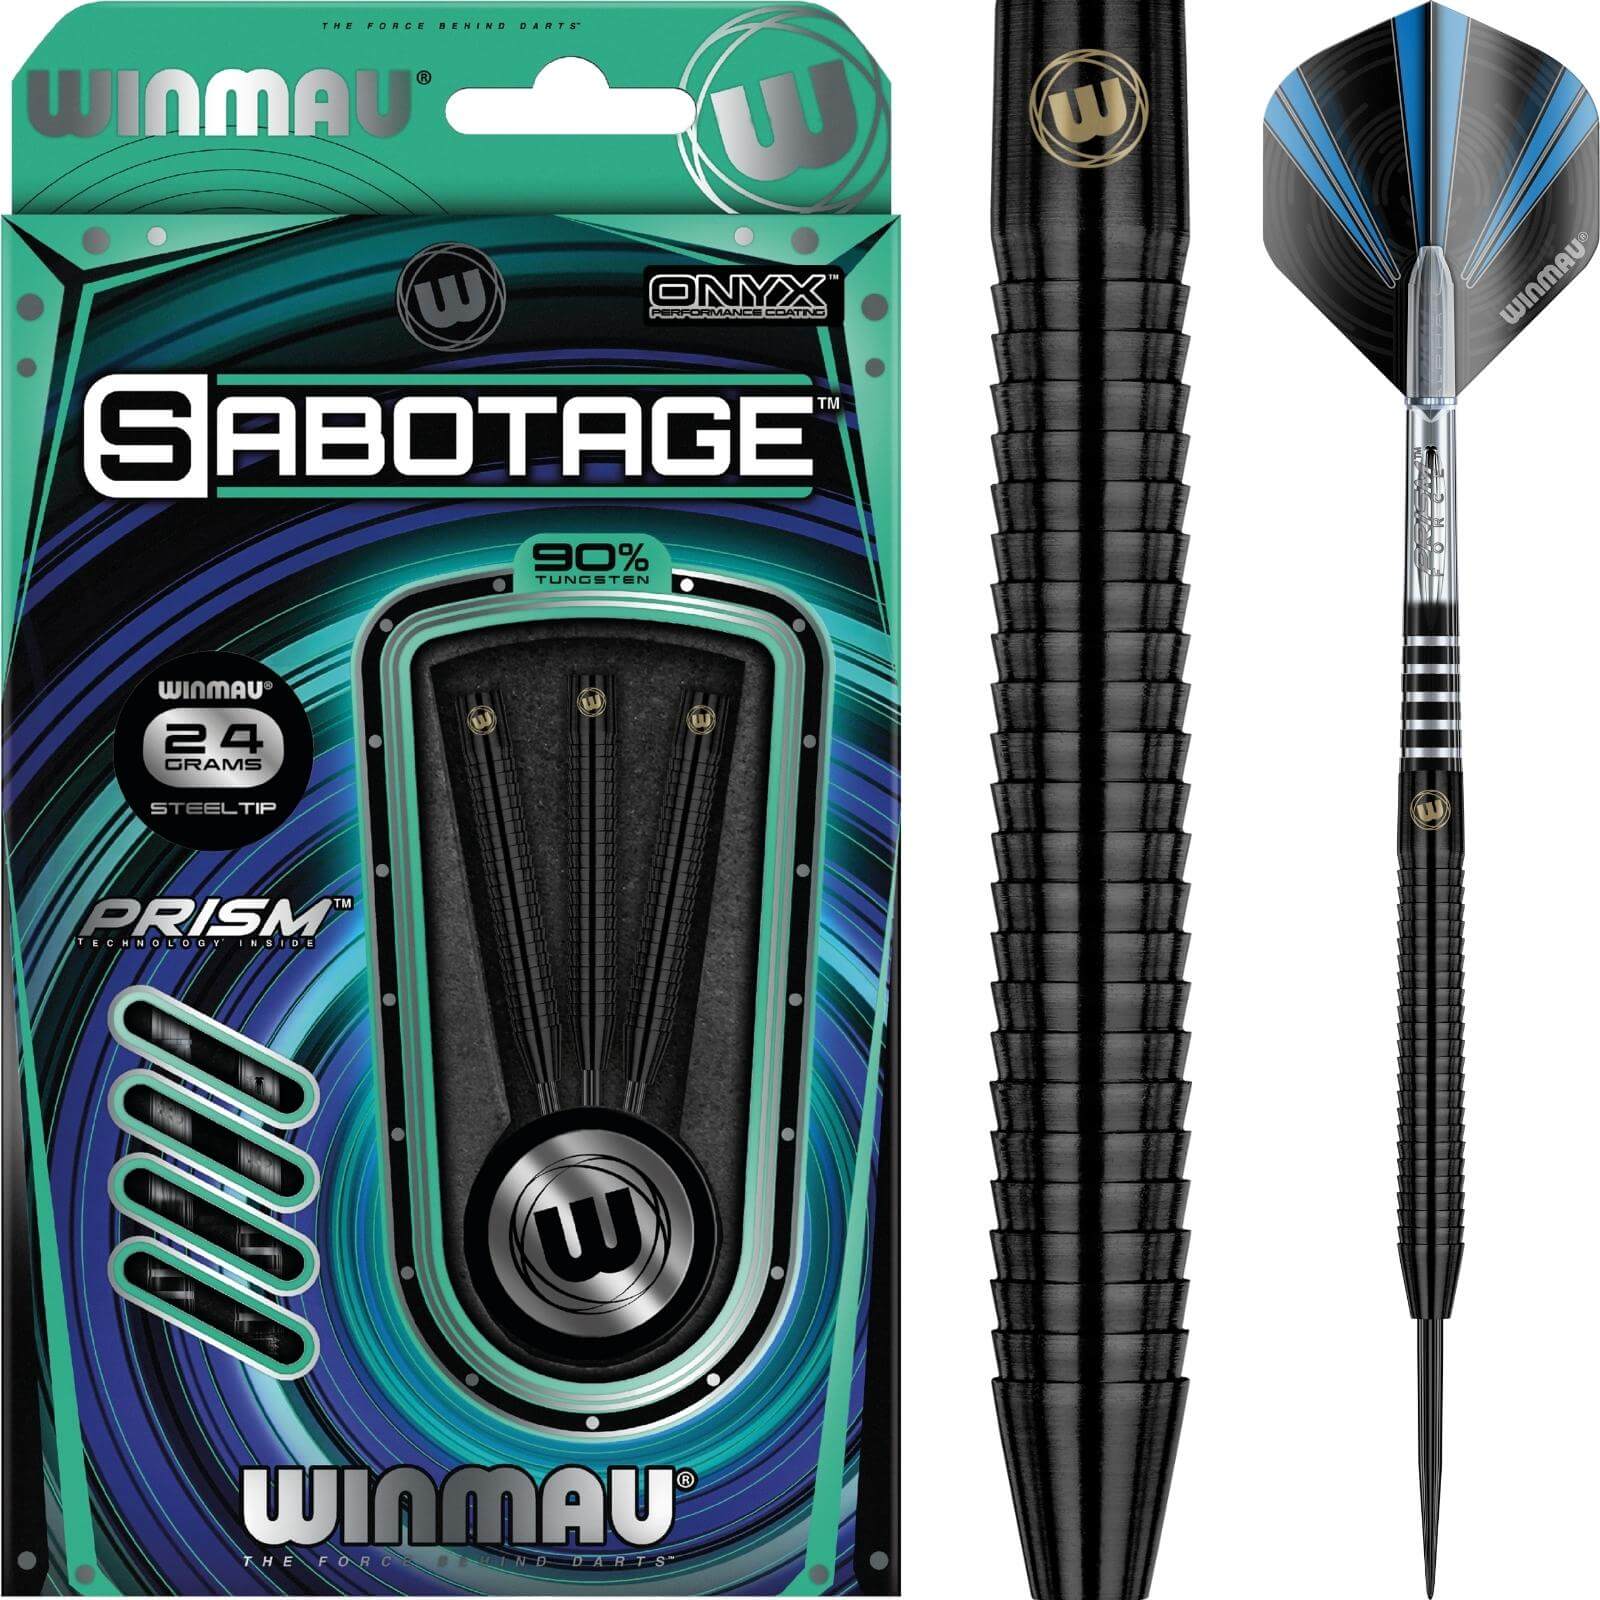 Darts - Winmau - Sabotage Black Darts - Steel Tip - 90% Tungsten - 22g 24g 26g 